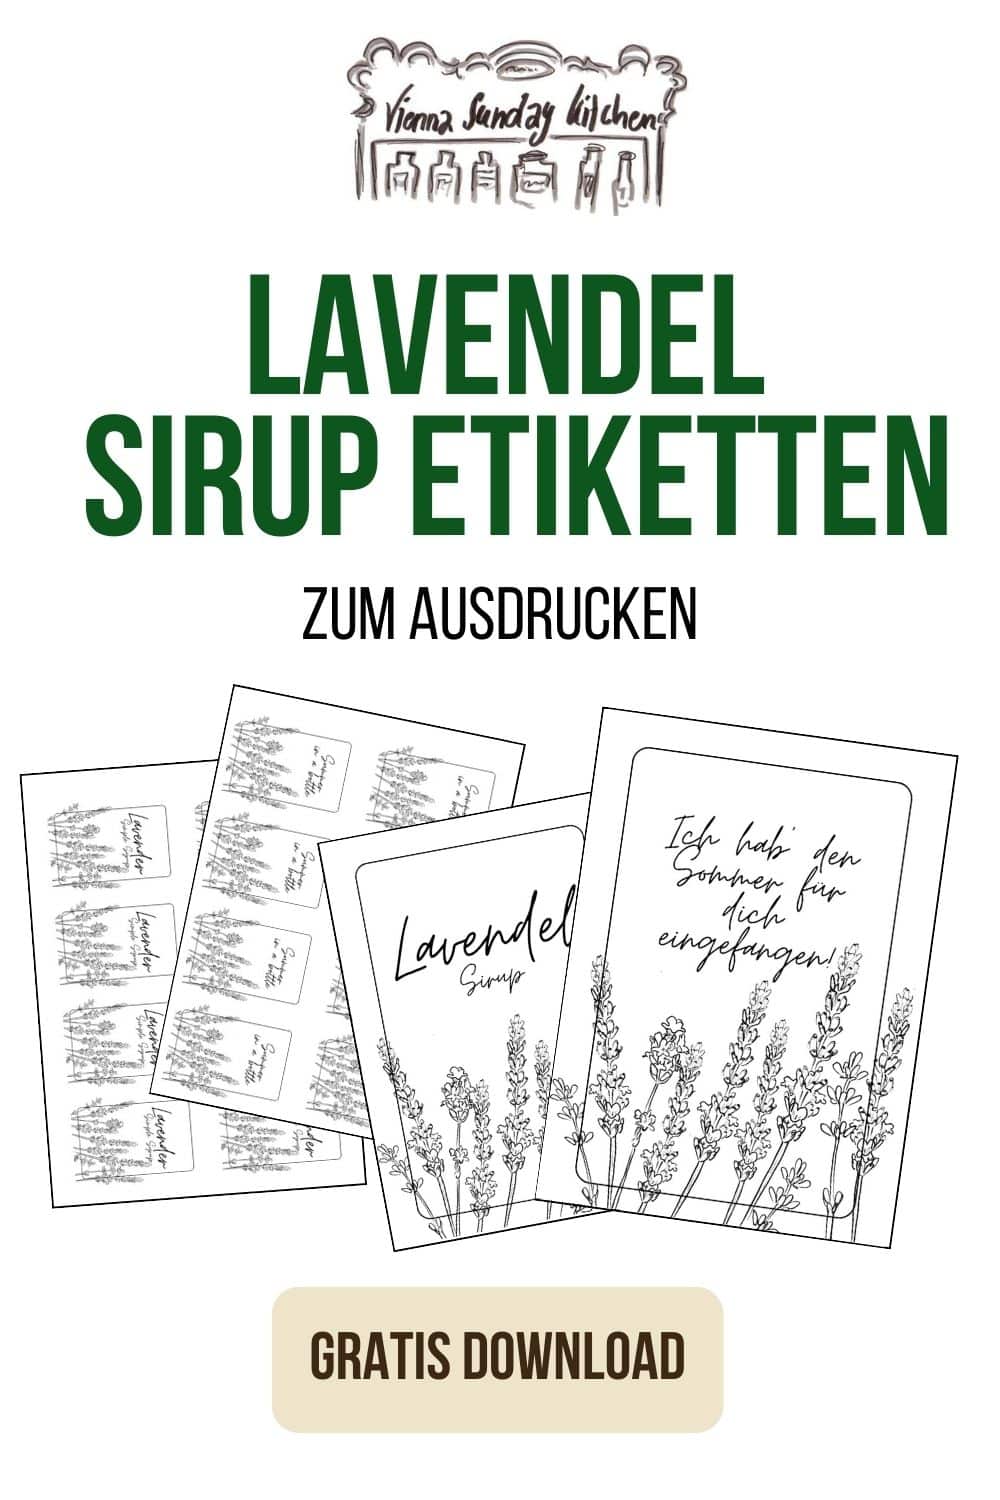 Banner Lavendel Sirup Etiketten